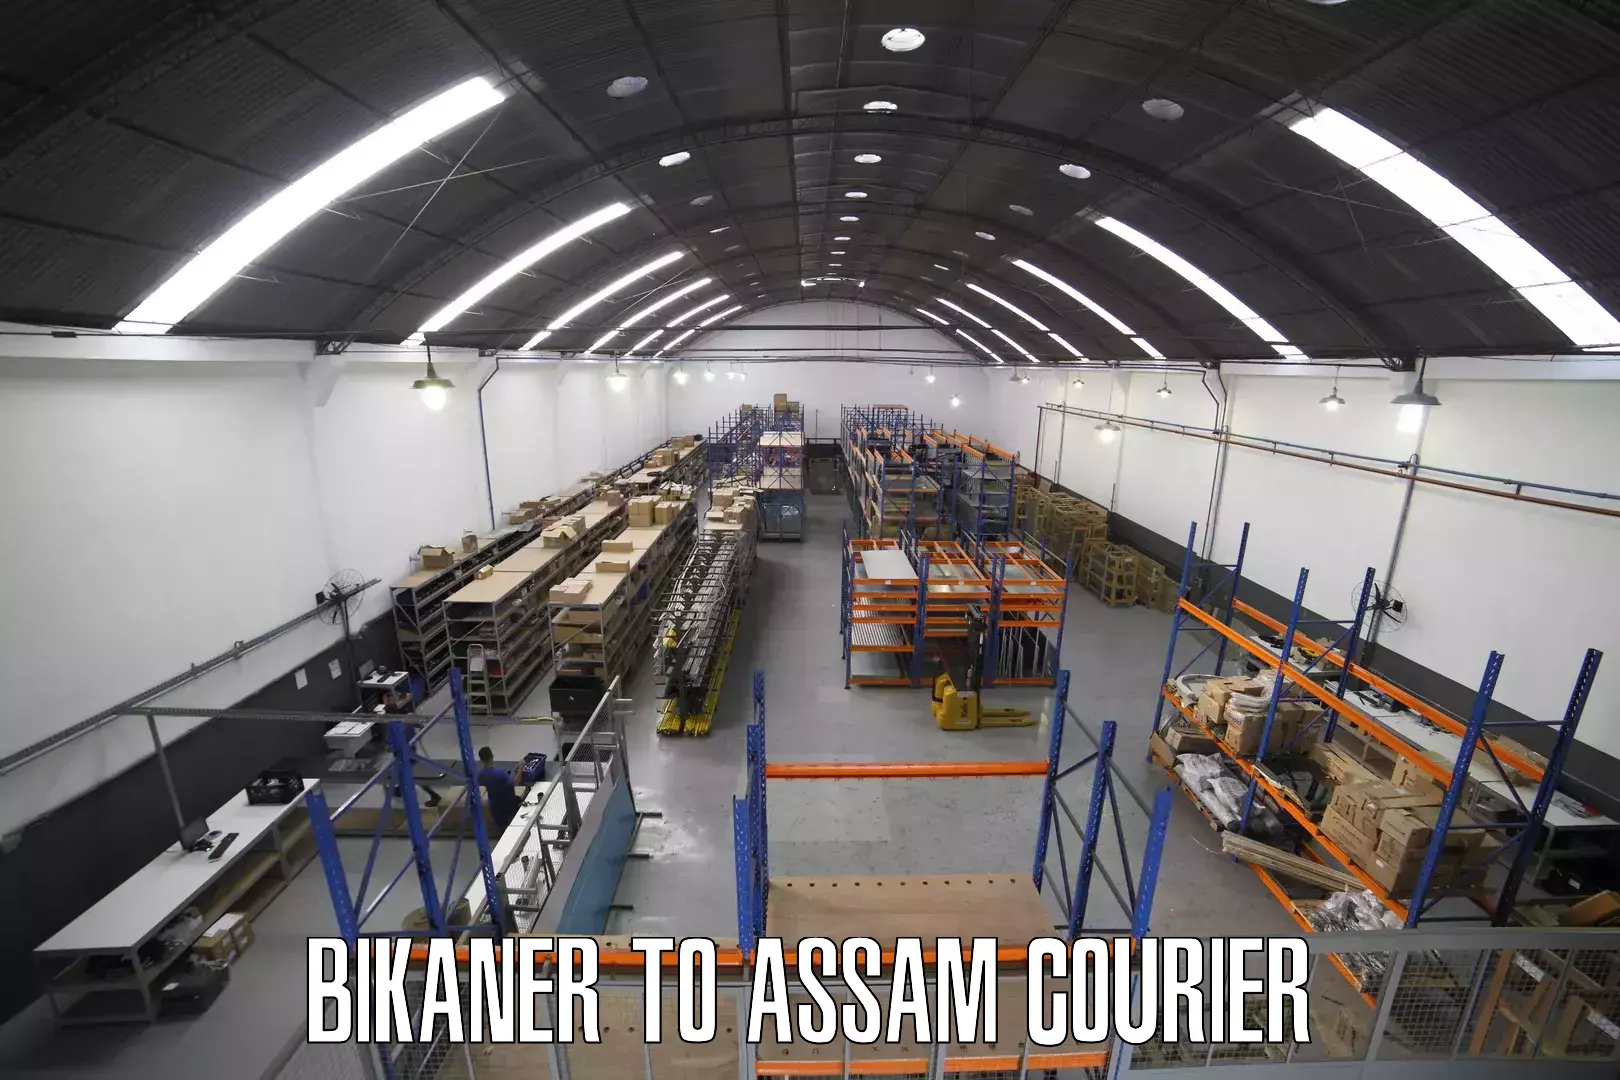 Cargo courier service Bikaner to Assam